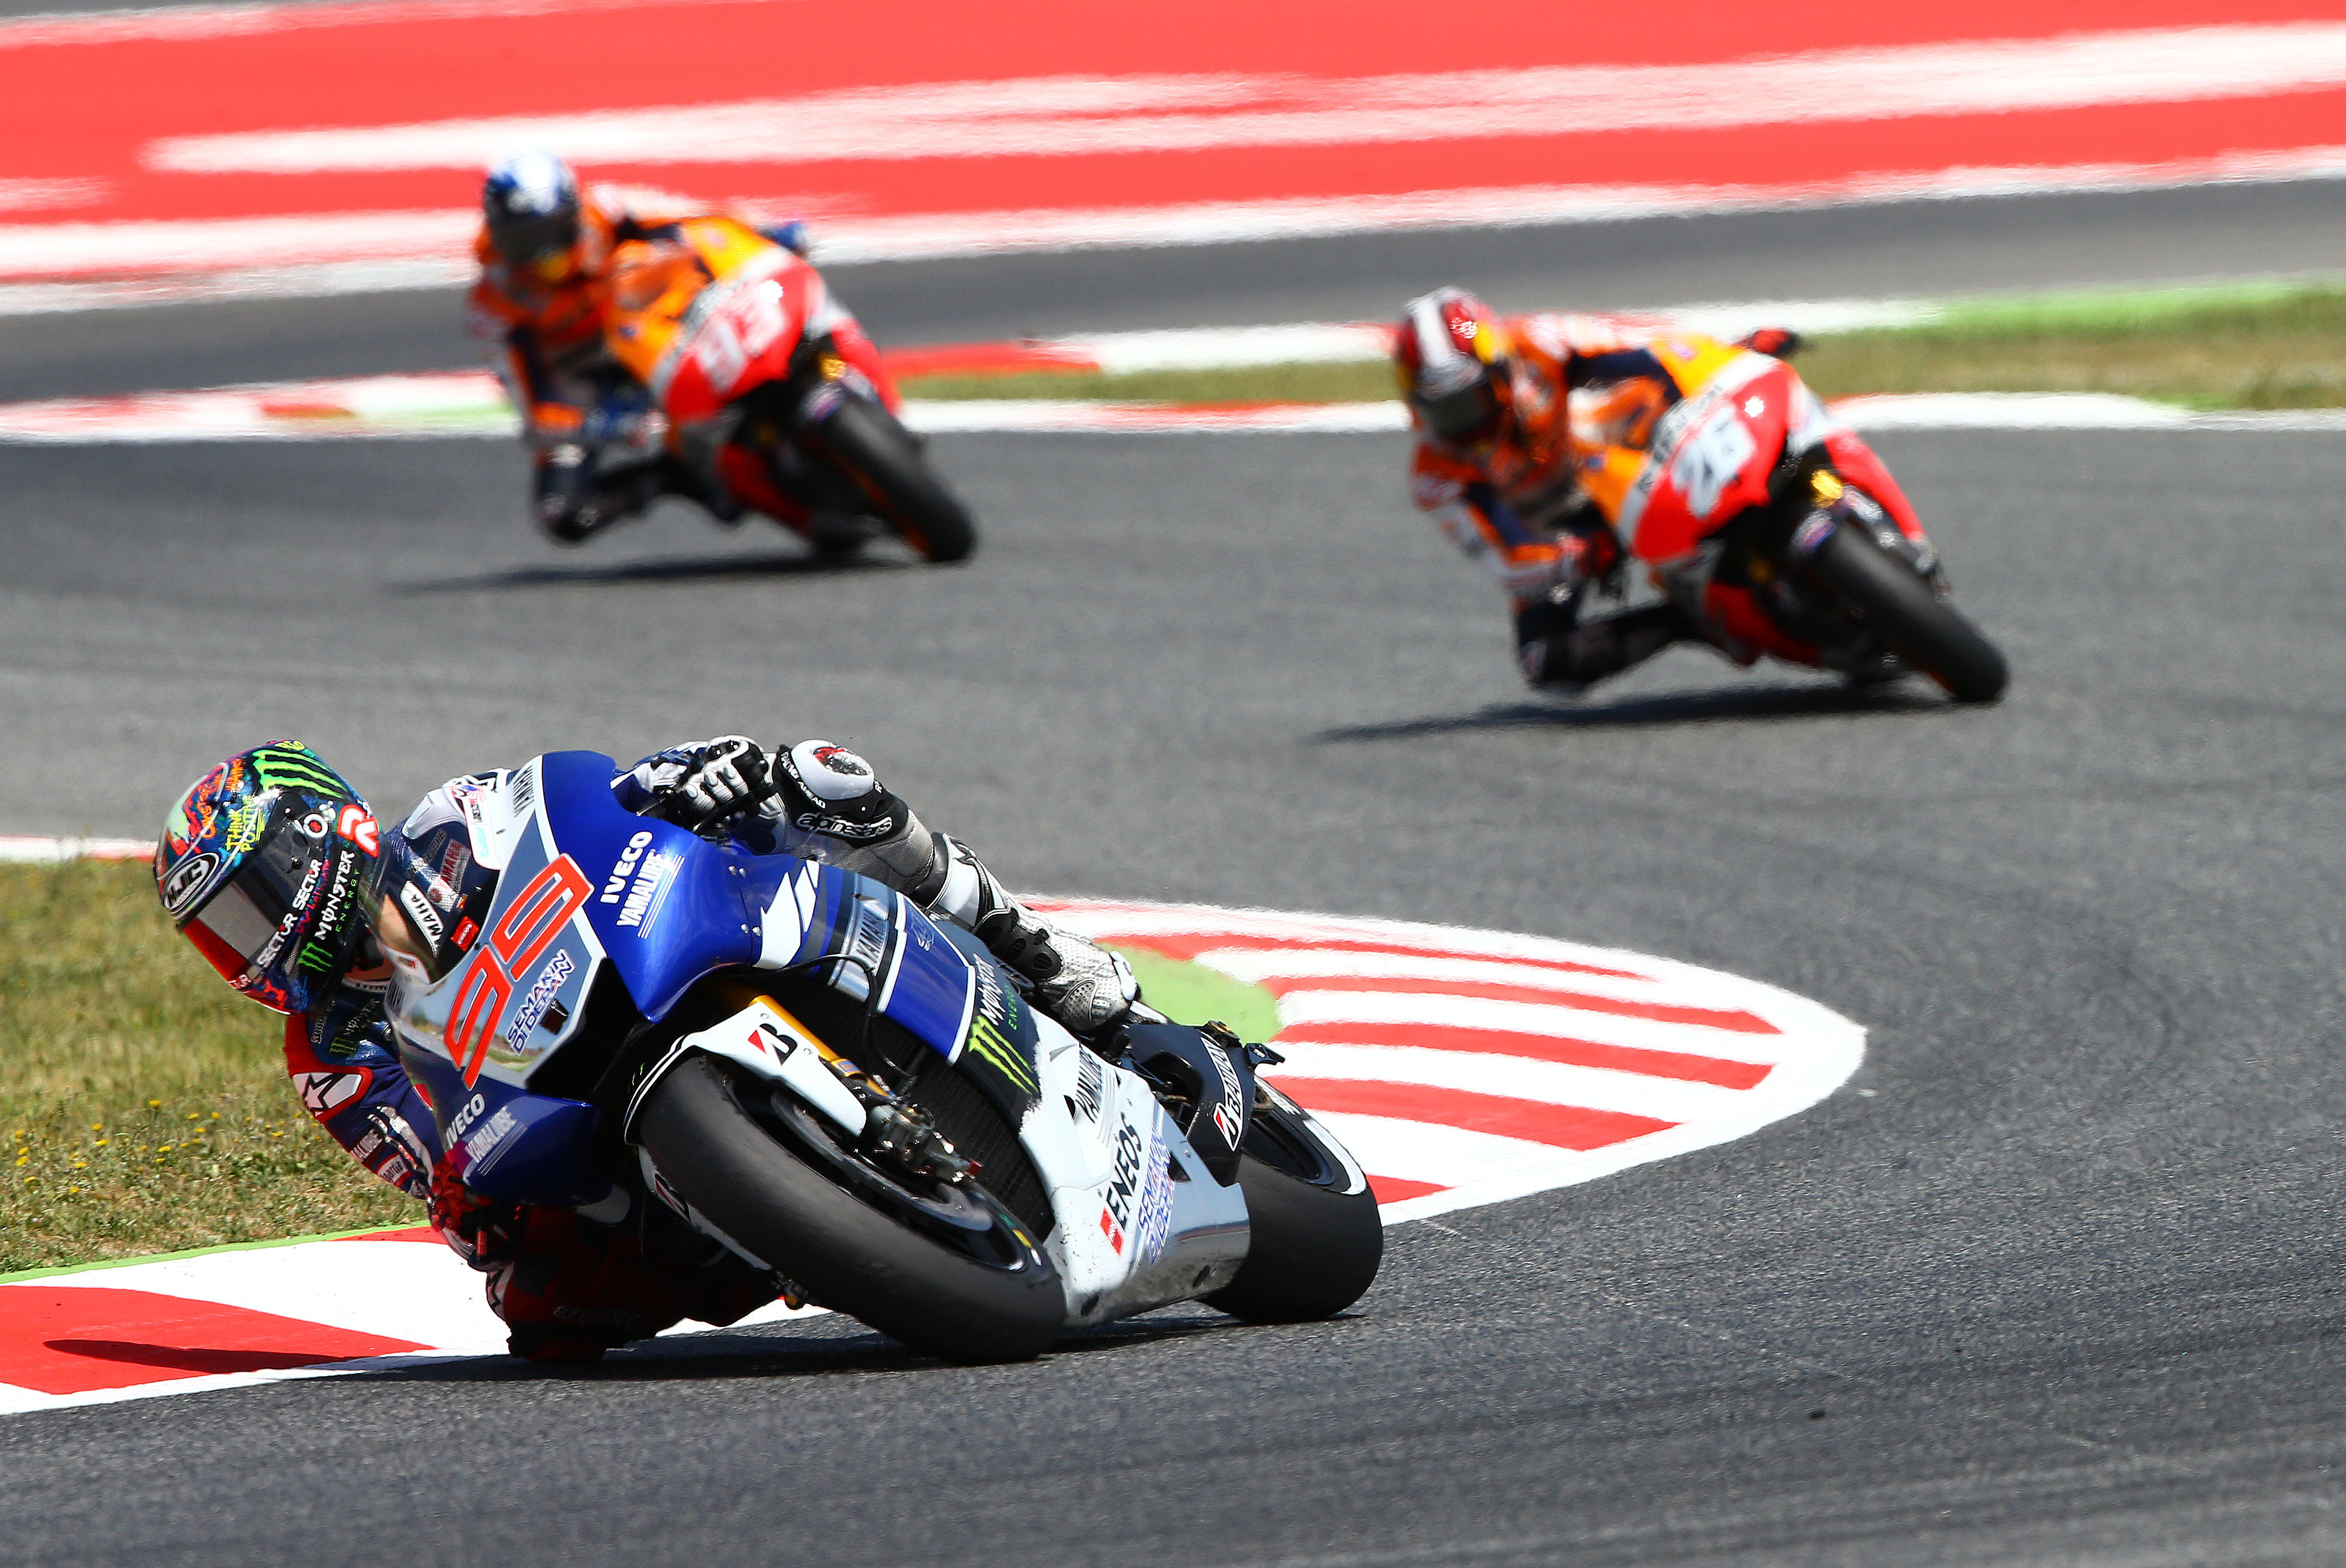 MotoGP 2013: Championship standings after Catalunya